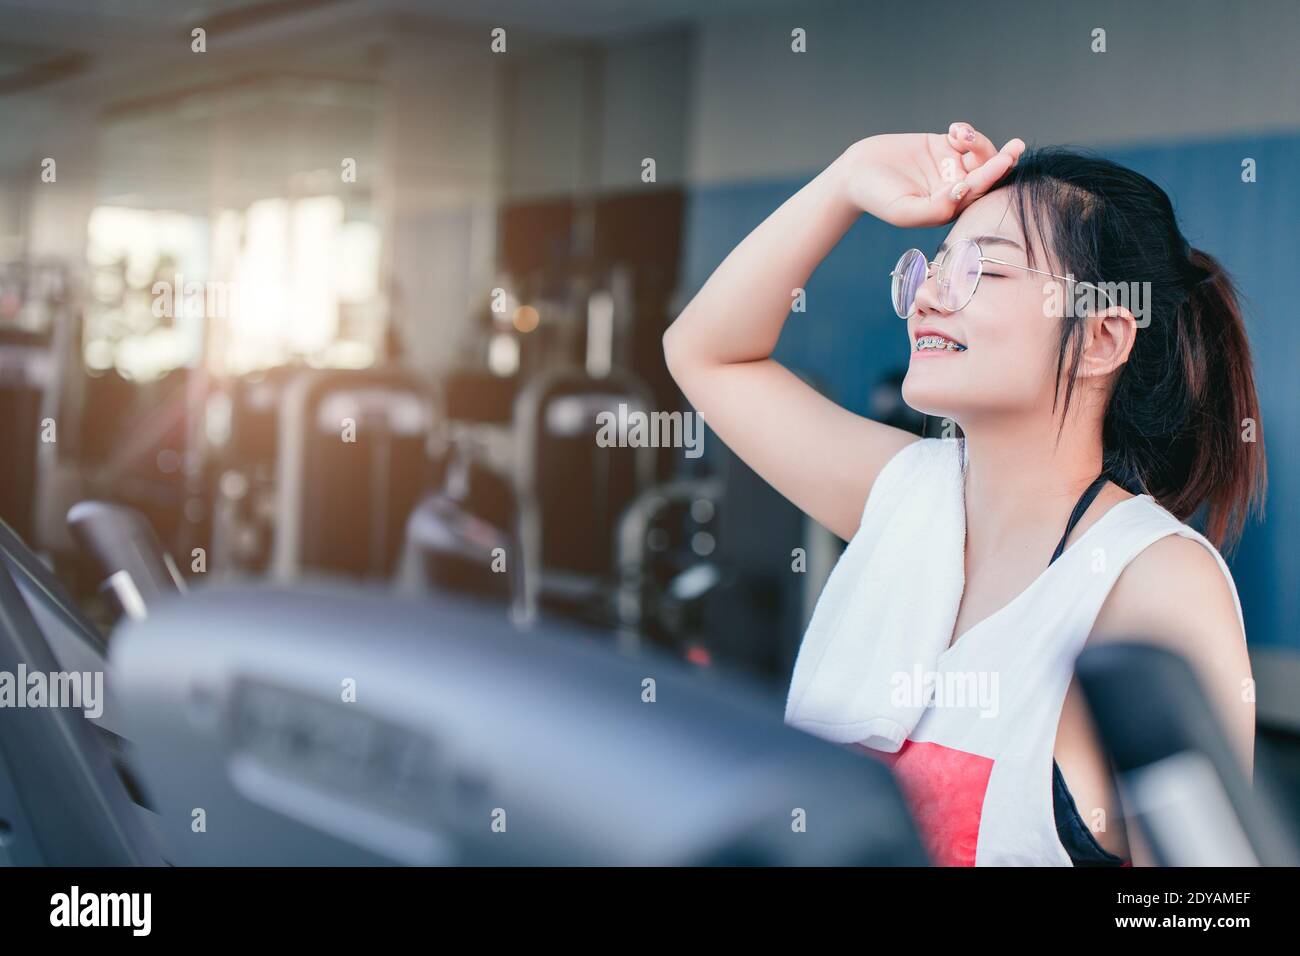 Asiatische Teenager Zahnspange Mädchen Cardio-Training Übung im Sportverein Mit einem Handtuch auf den Schultern lächelnd nach dem Training auf dem Laufband In der Turnhalle suchen Camcorder Stockfoto